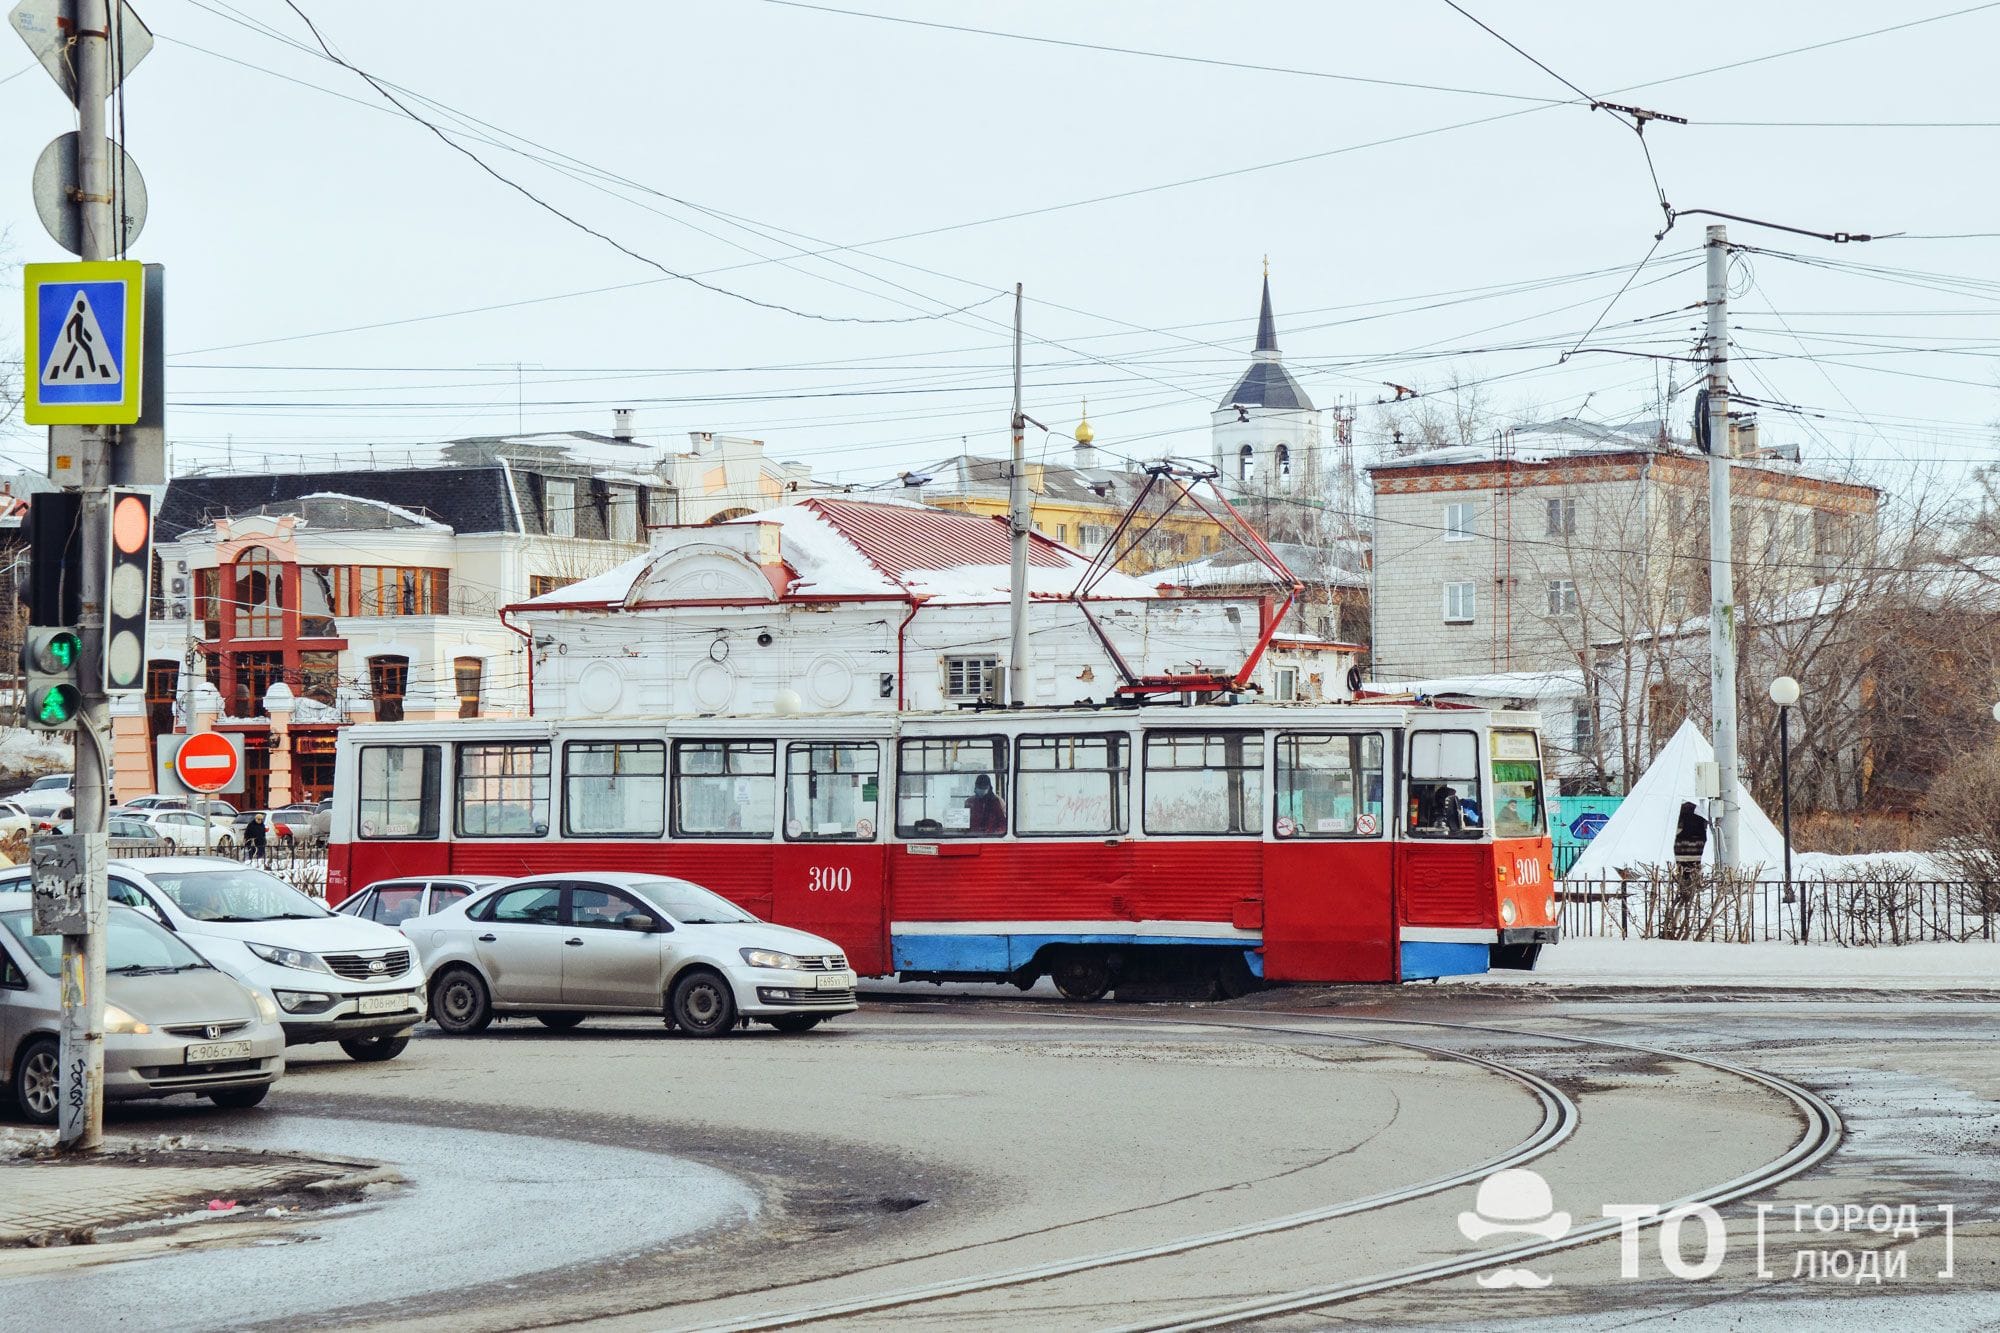 Общественный транспорт, Томские новости, общественный транспорт томск маршрутка как доехать новости интересное Томские активисты планируют улучшить общественный транспорт в городе